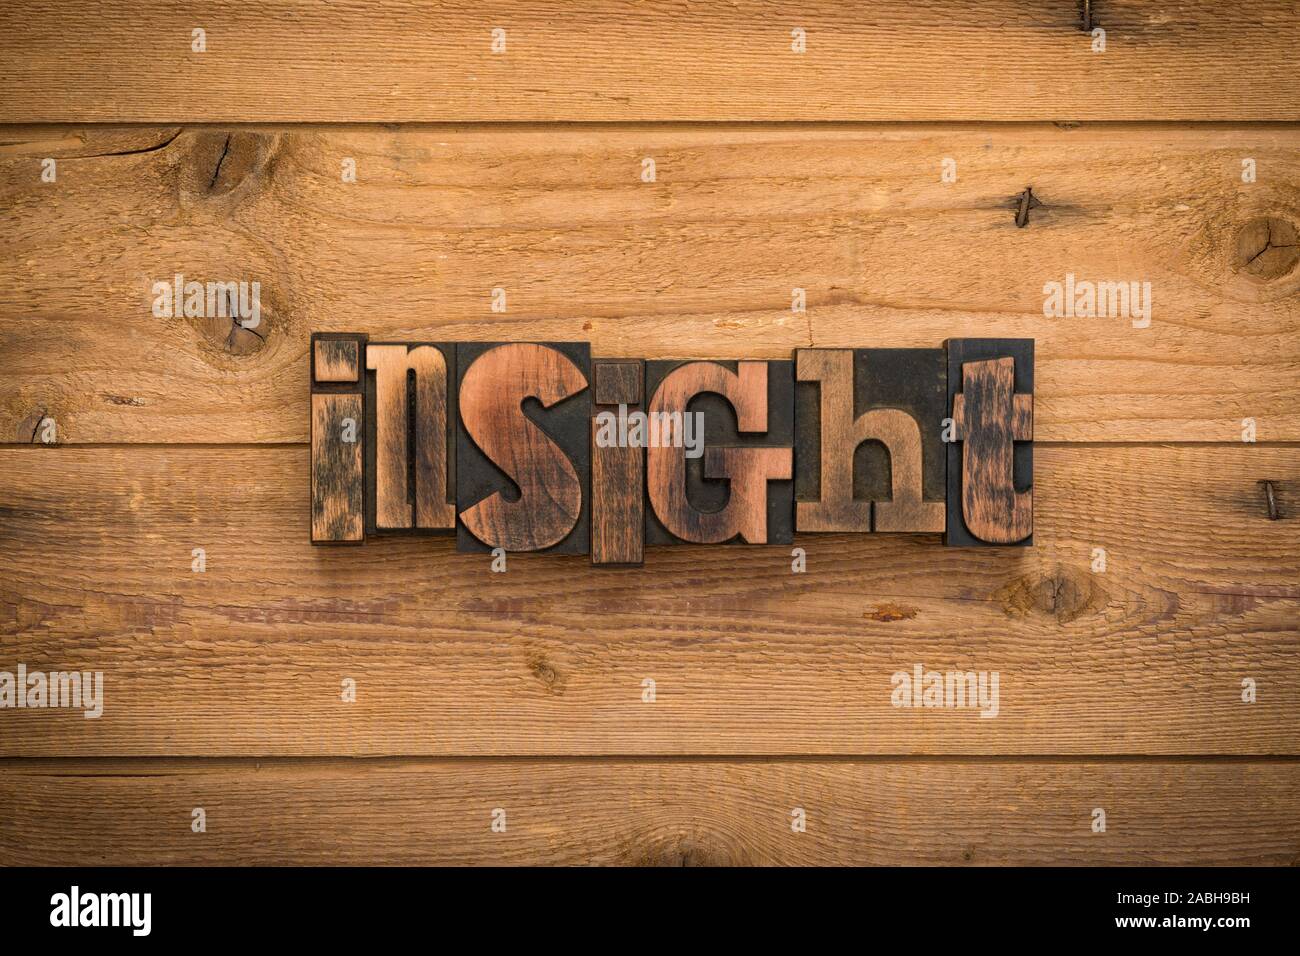 Insight, einem Wort mit Vintage Buchdruck Blöcke auf rustikalem Holz Hintergrund geschrieben. Stockfoto